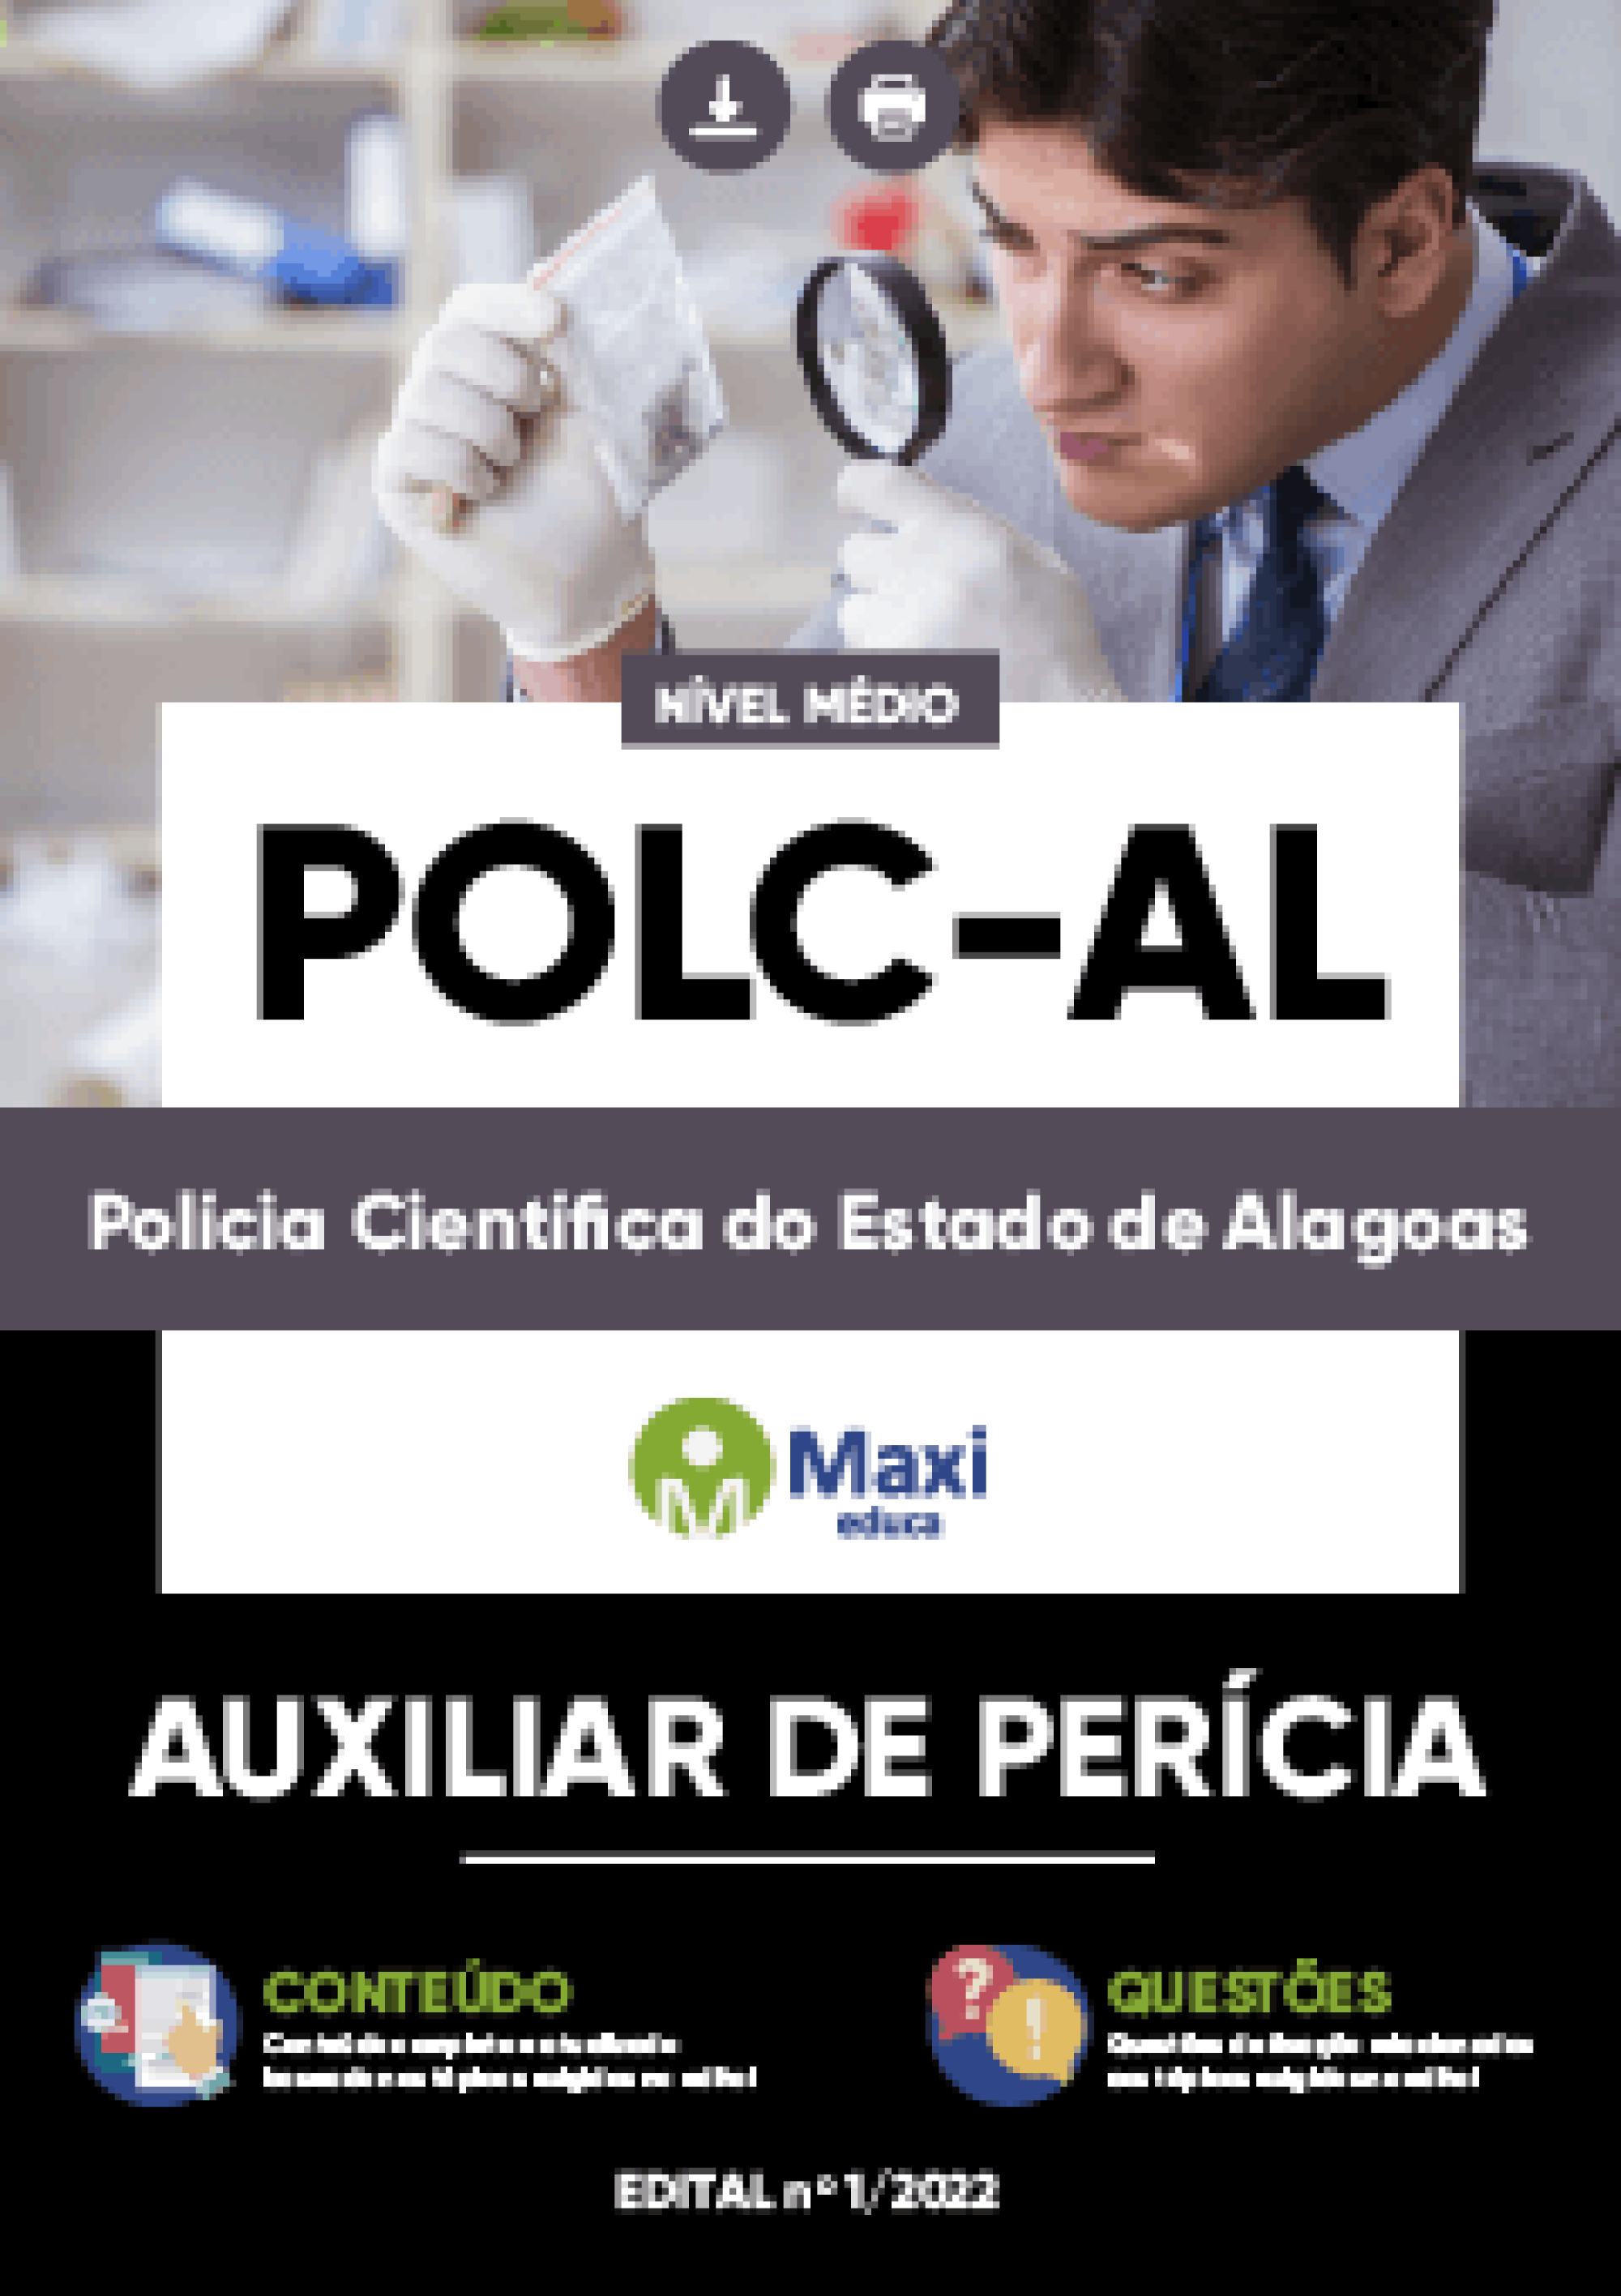 Apostila Digital em PDF do Polícia Científica do Estado de Alagoas - POLC-AL